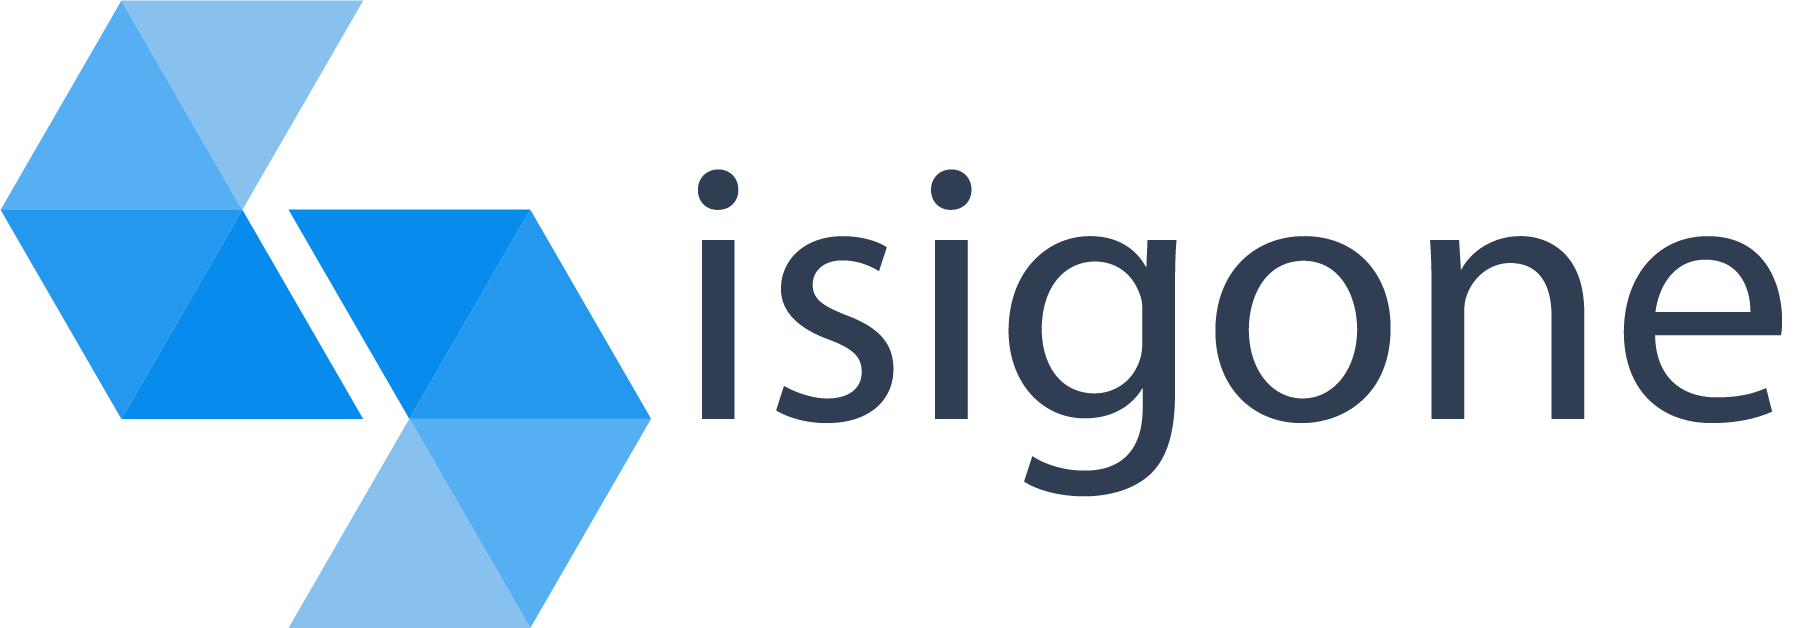 Isigone ingénierie logicielle, objets connectés et IoT à Lyon